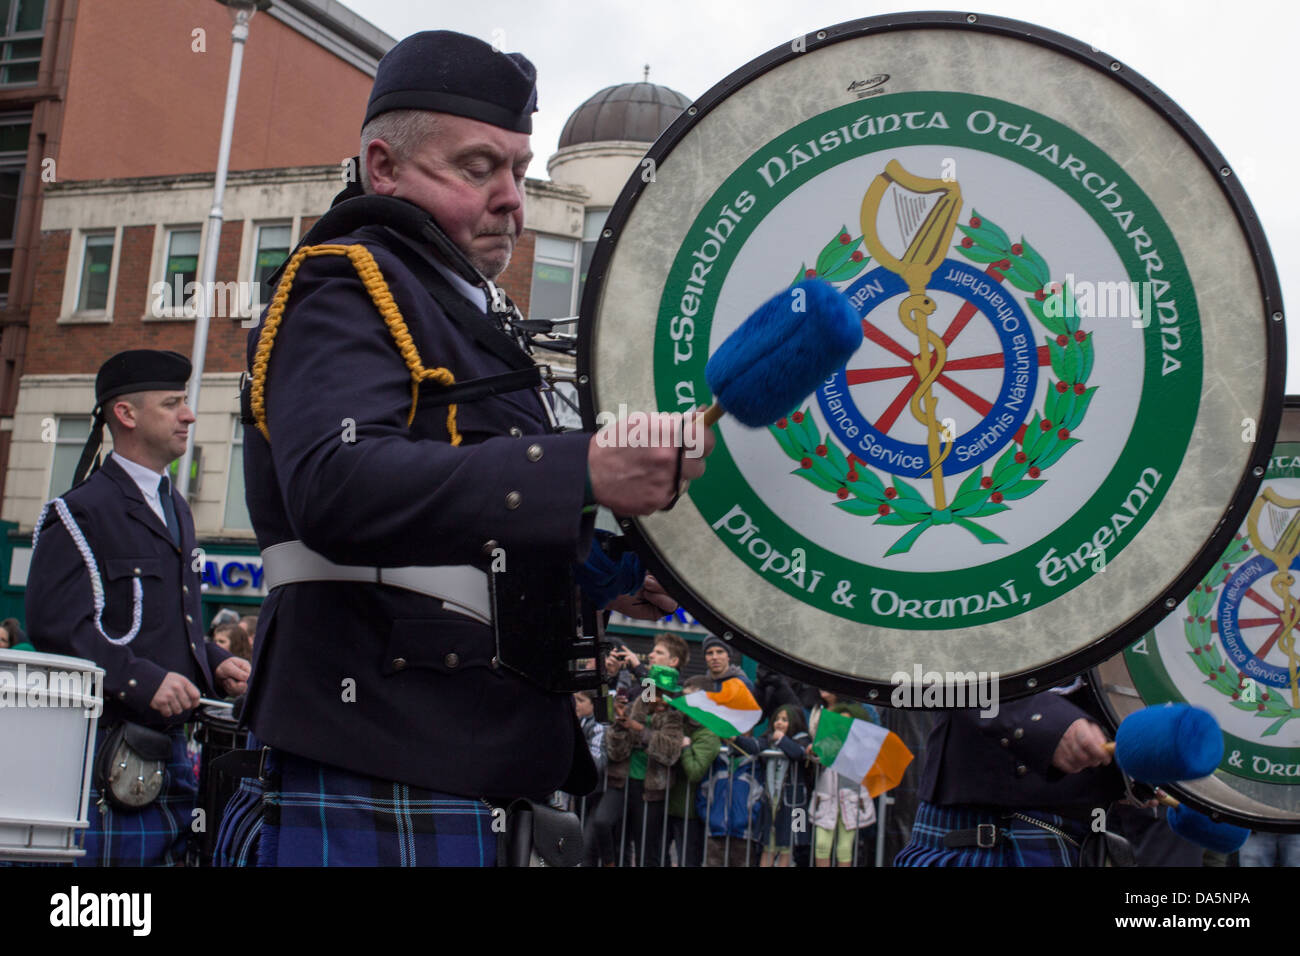 St. Patrick's Parade, Dublin, Ireland, 2013. Stock Photo